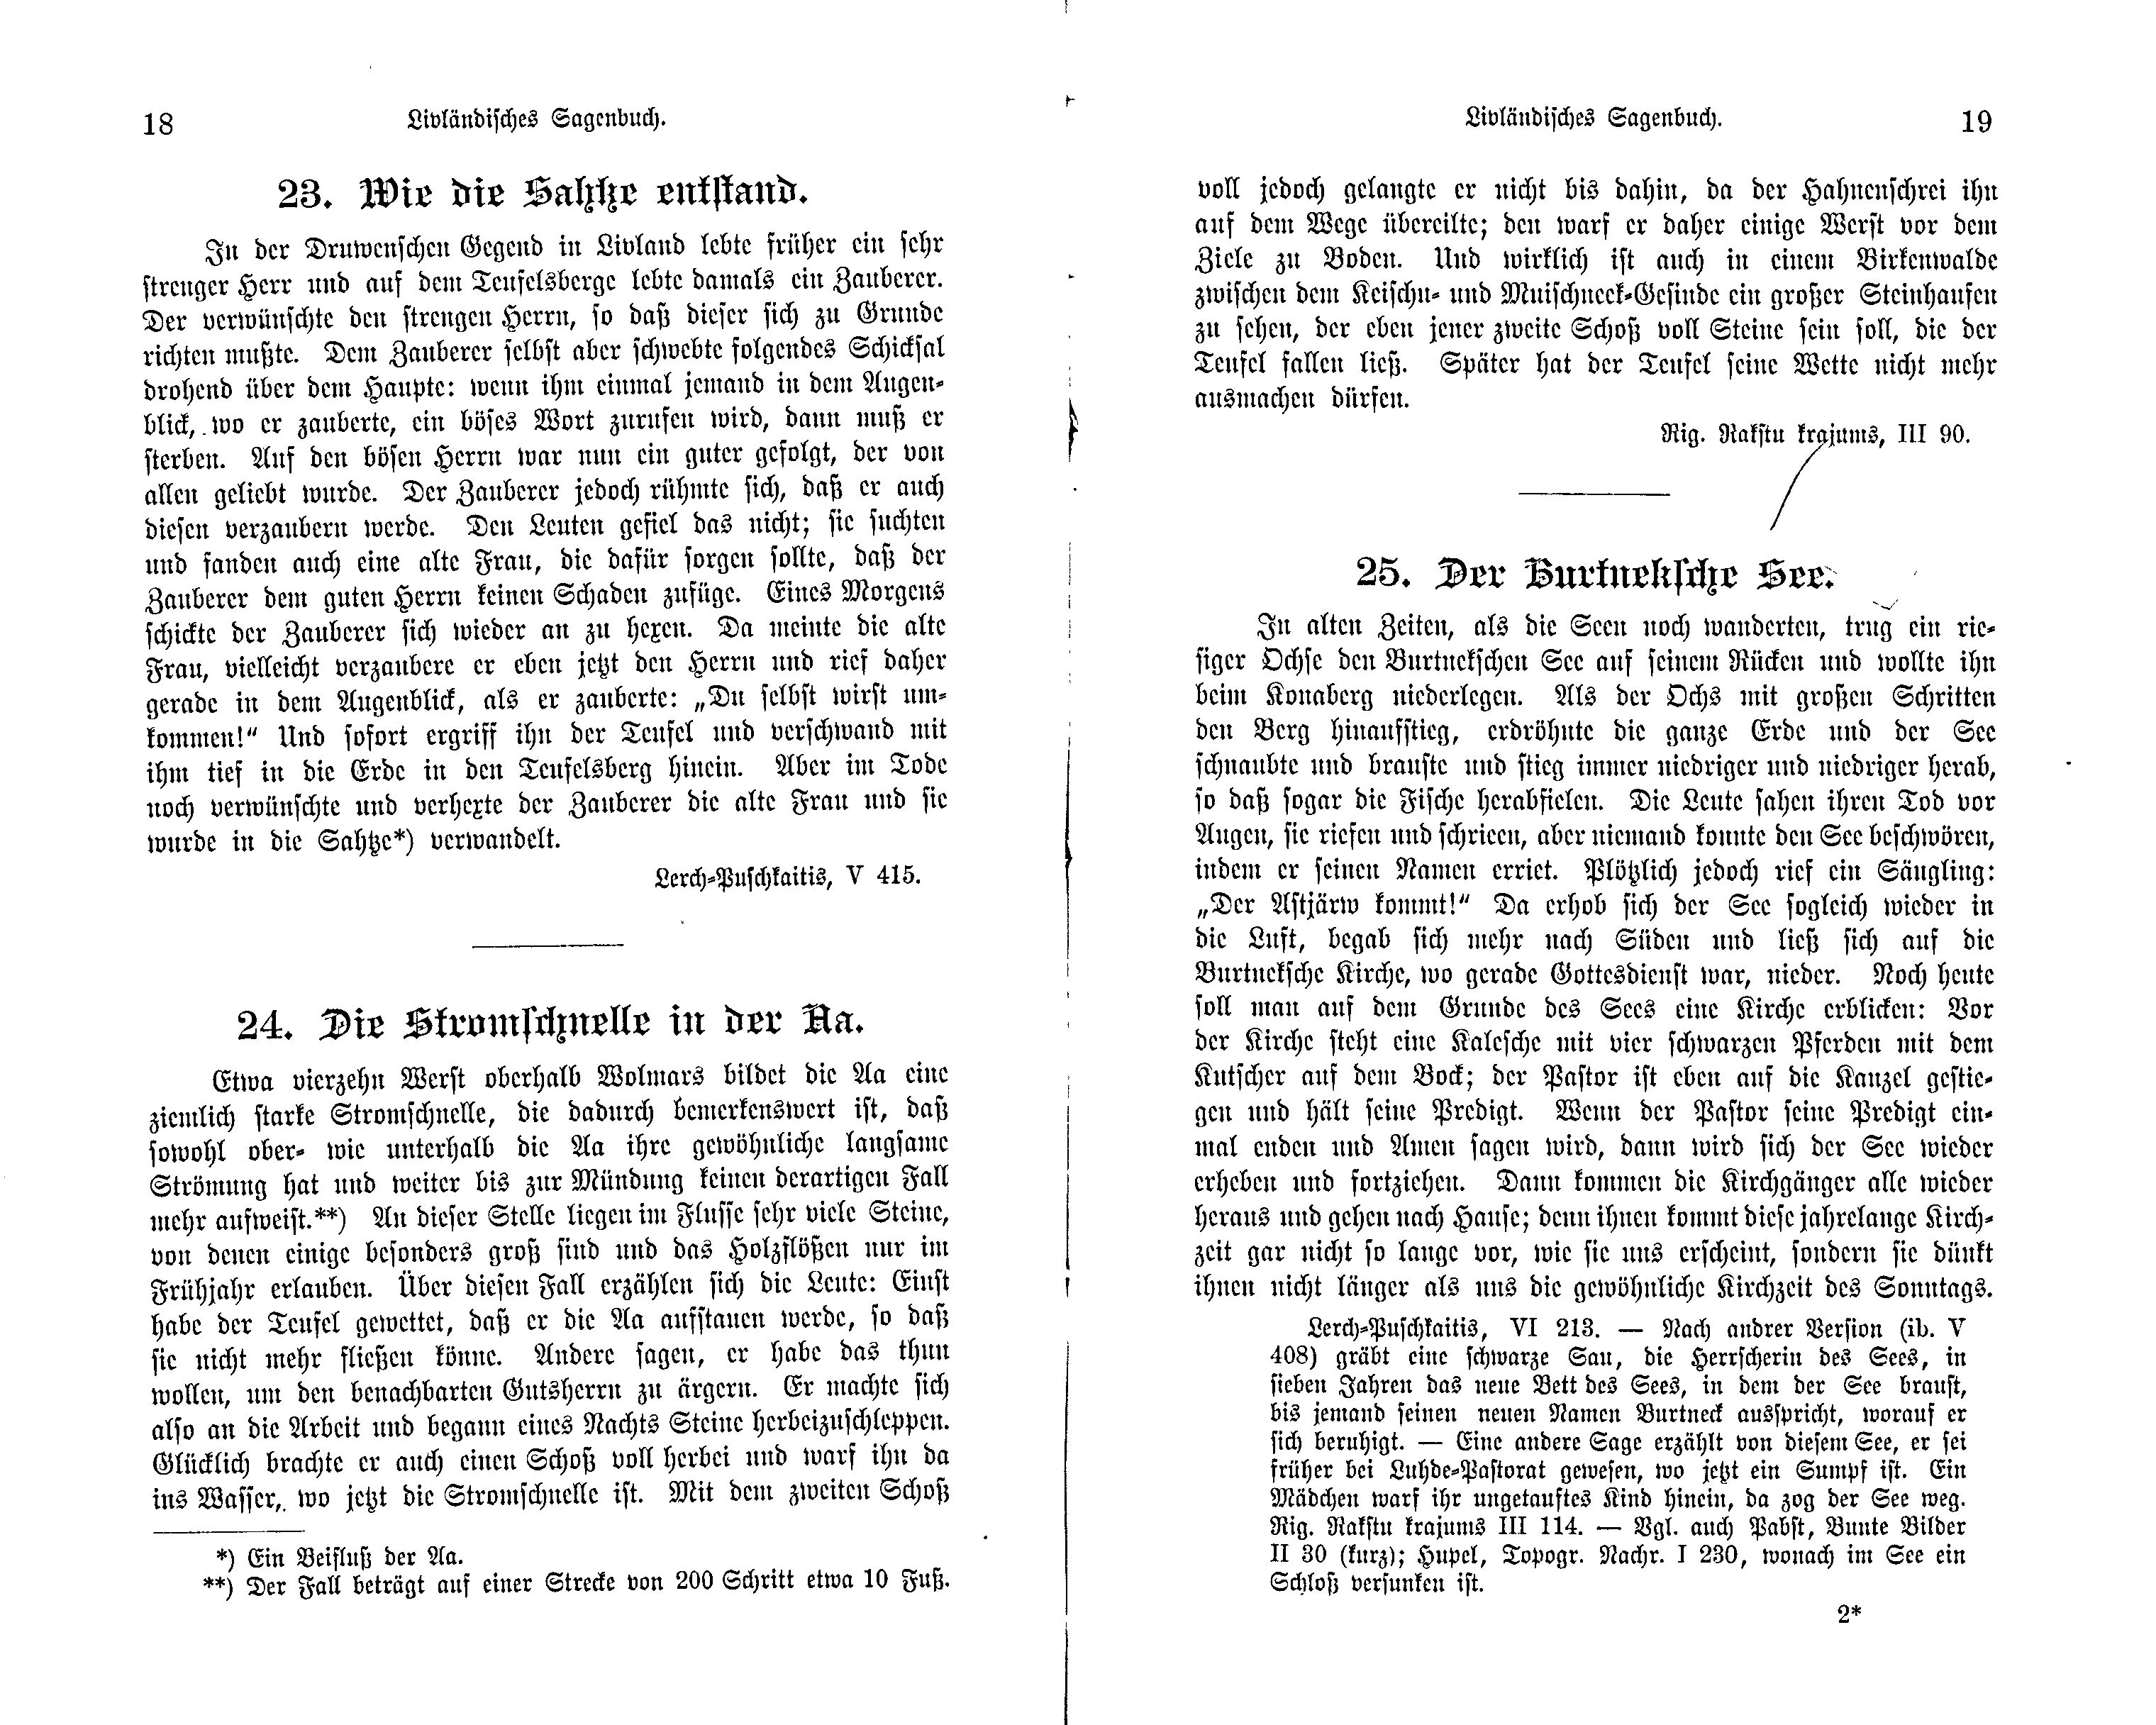 Livländisches Sagenbuch (1897) | 21. (18-19) Põhitekst